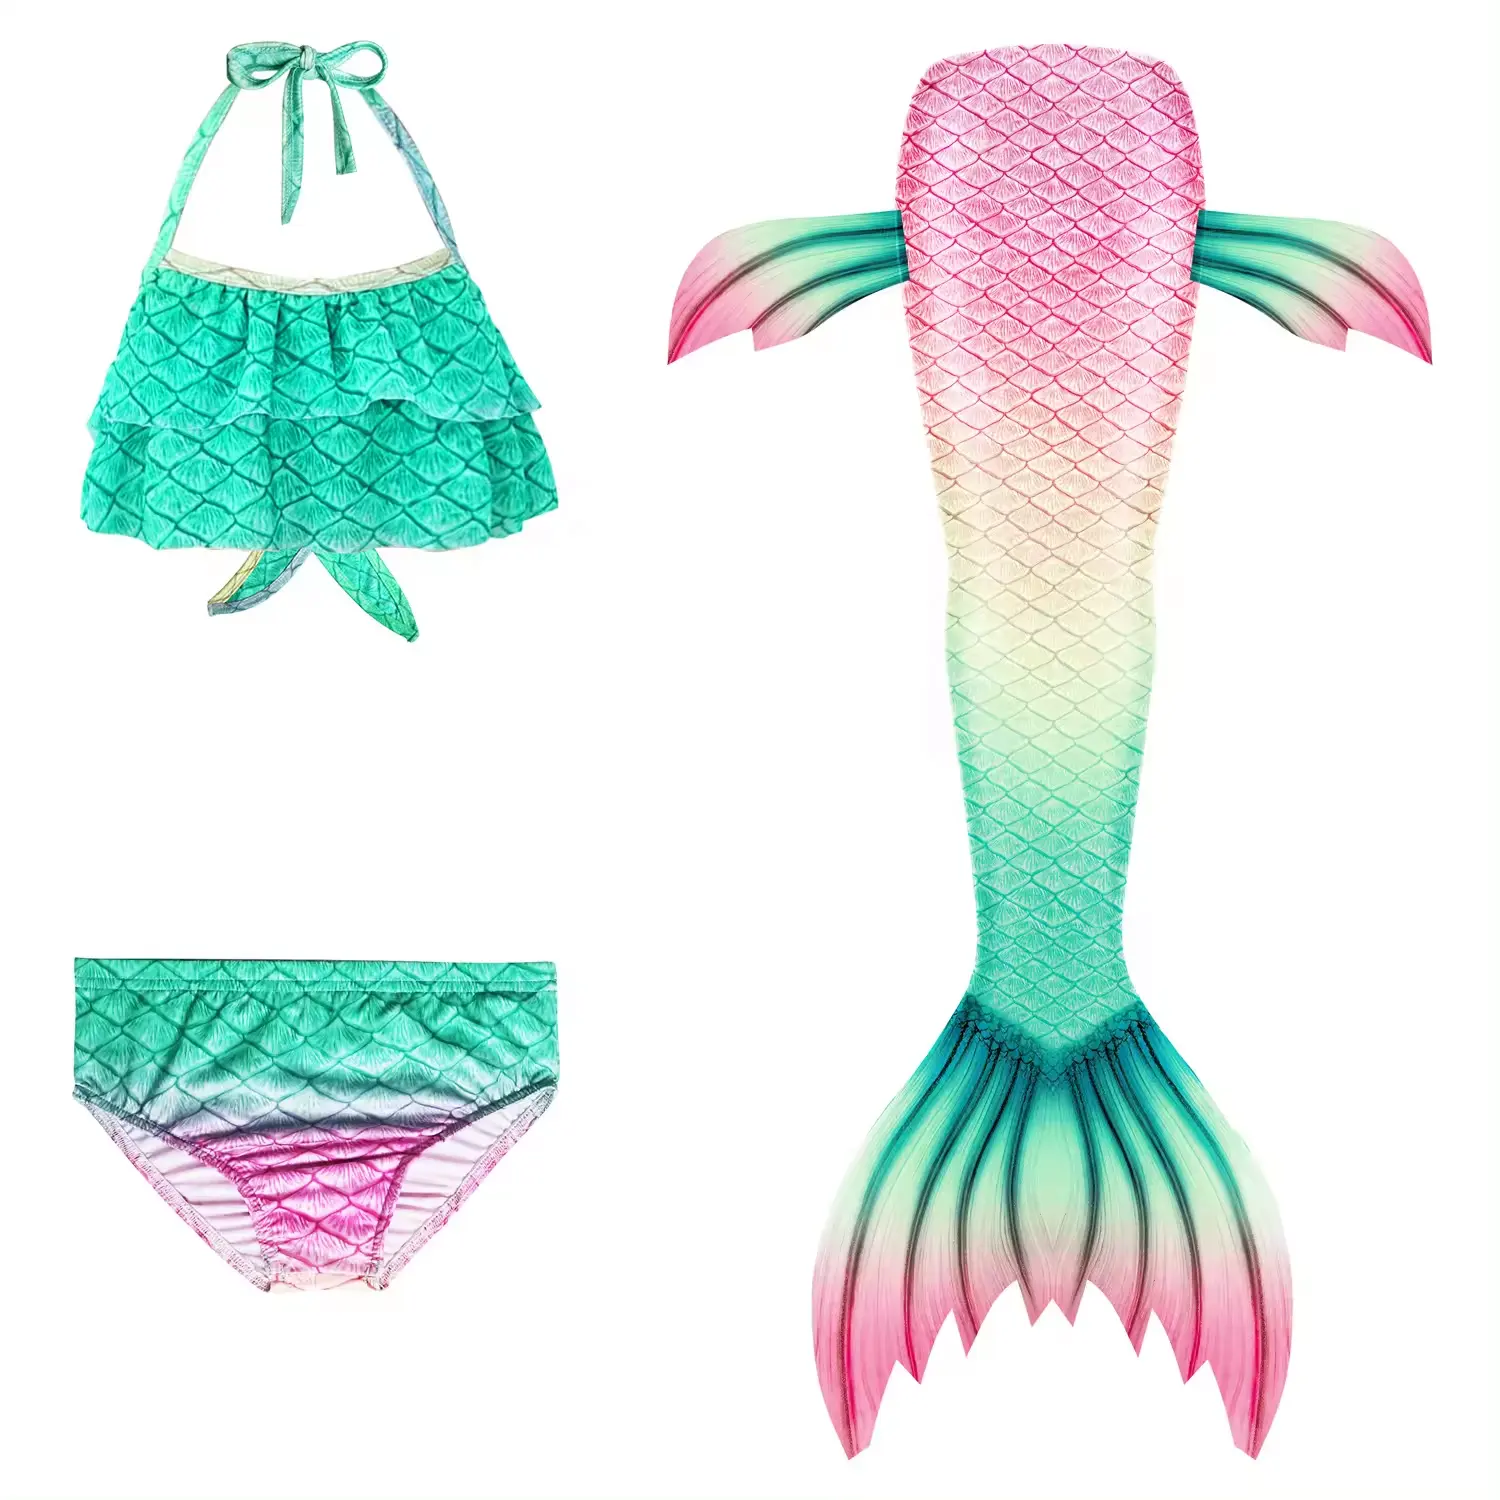 Üst düzey kızlar mayo Mermaid kuyrukları bebek kız mayo takım elbise seti yüzme prenses çocuk 100% Polyester çiçek